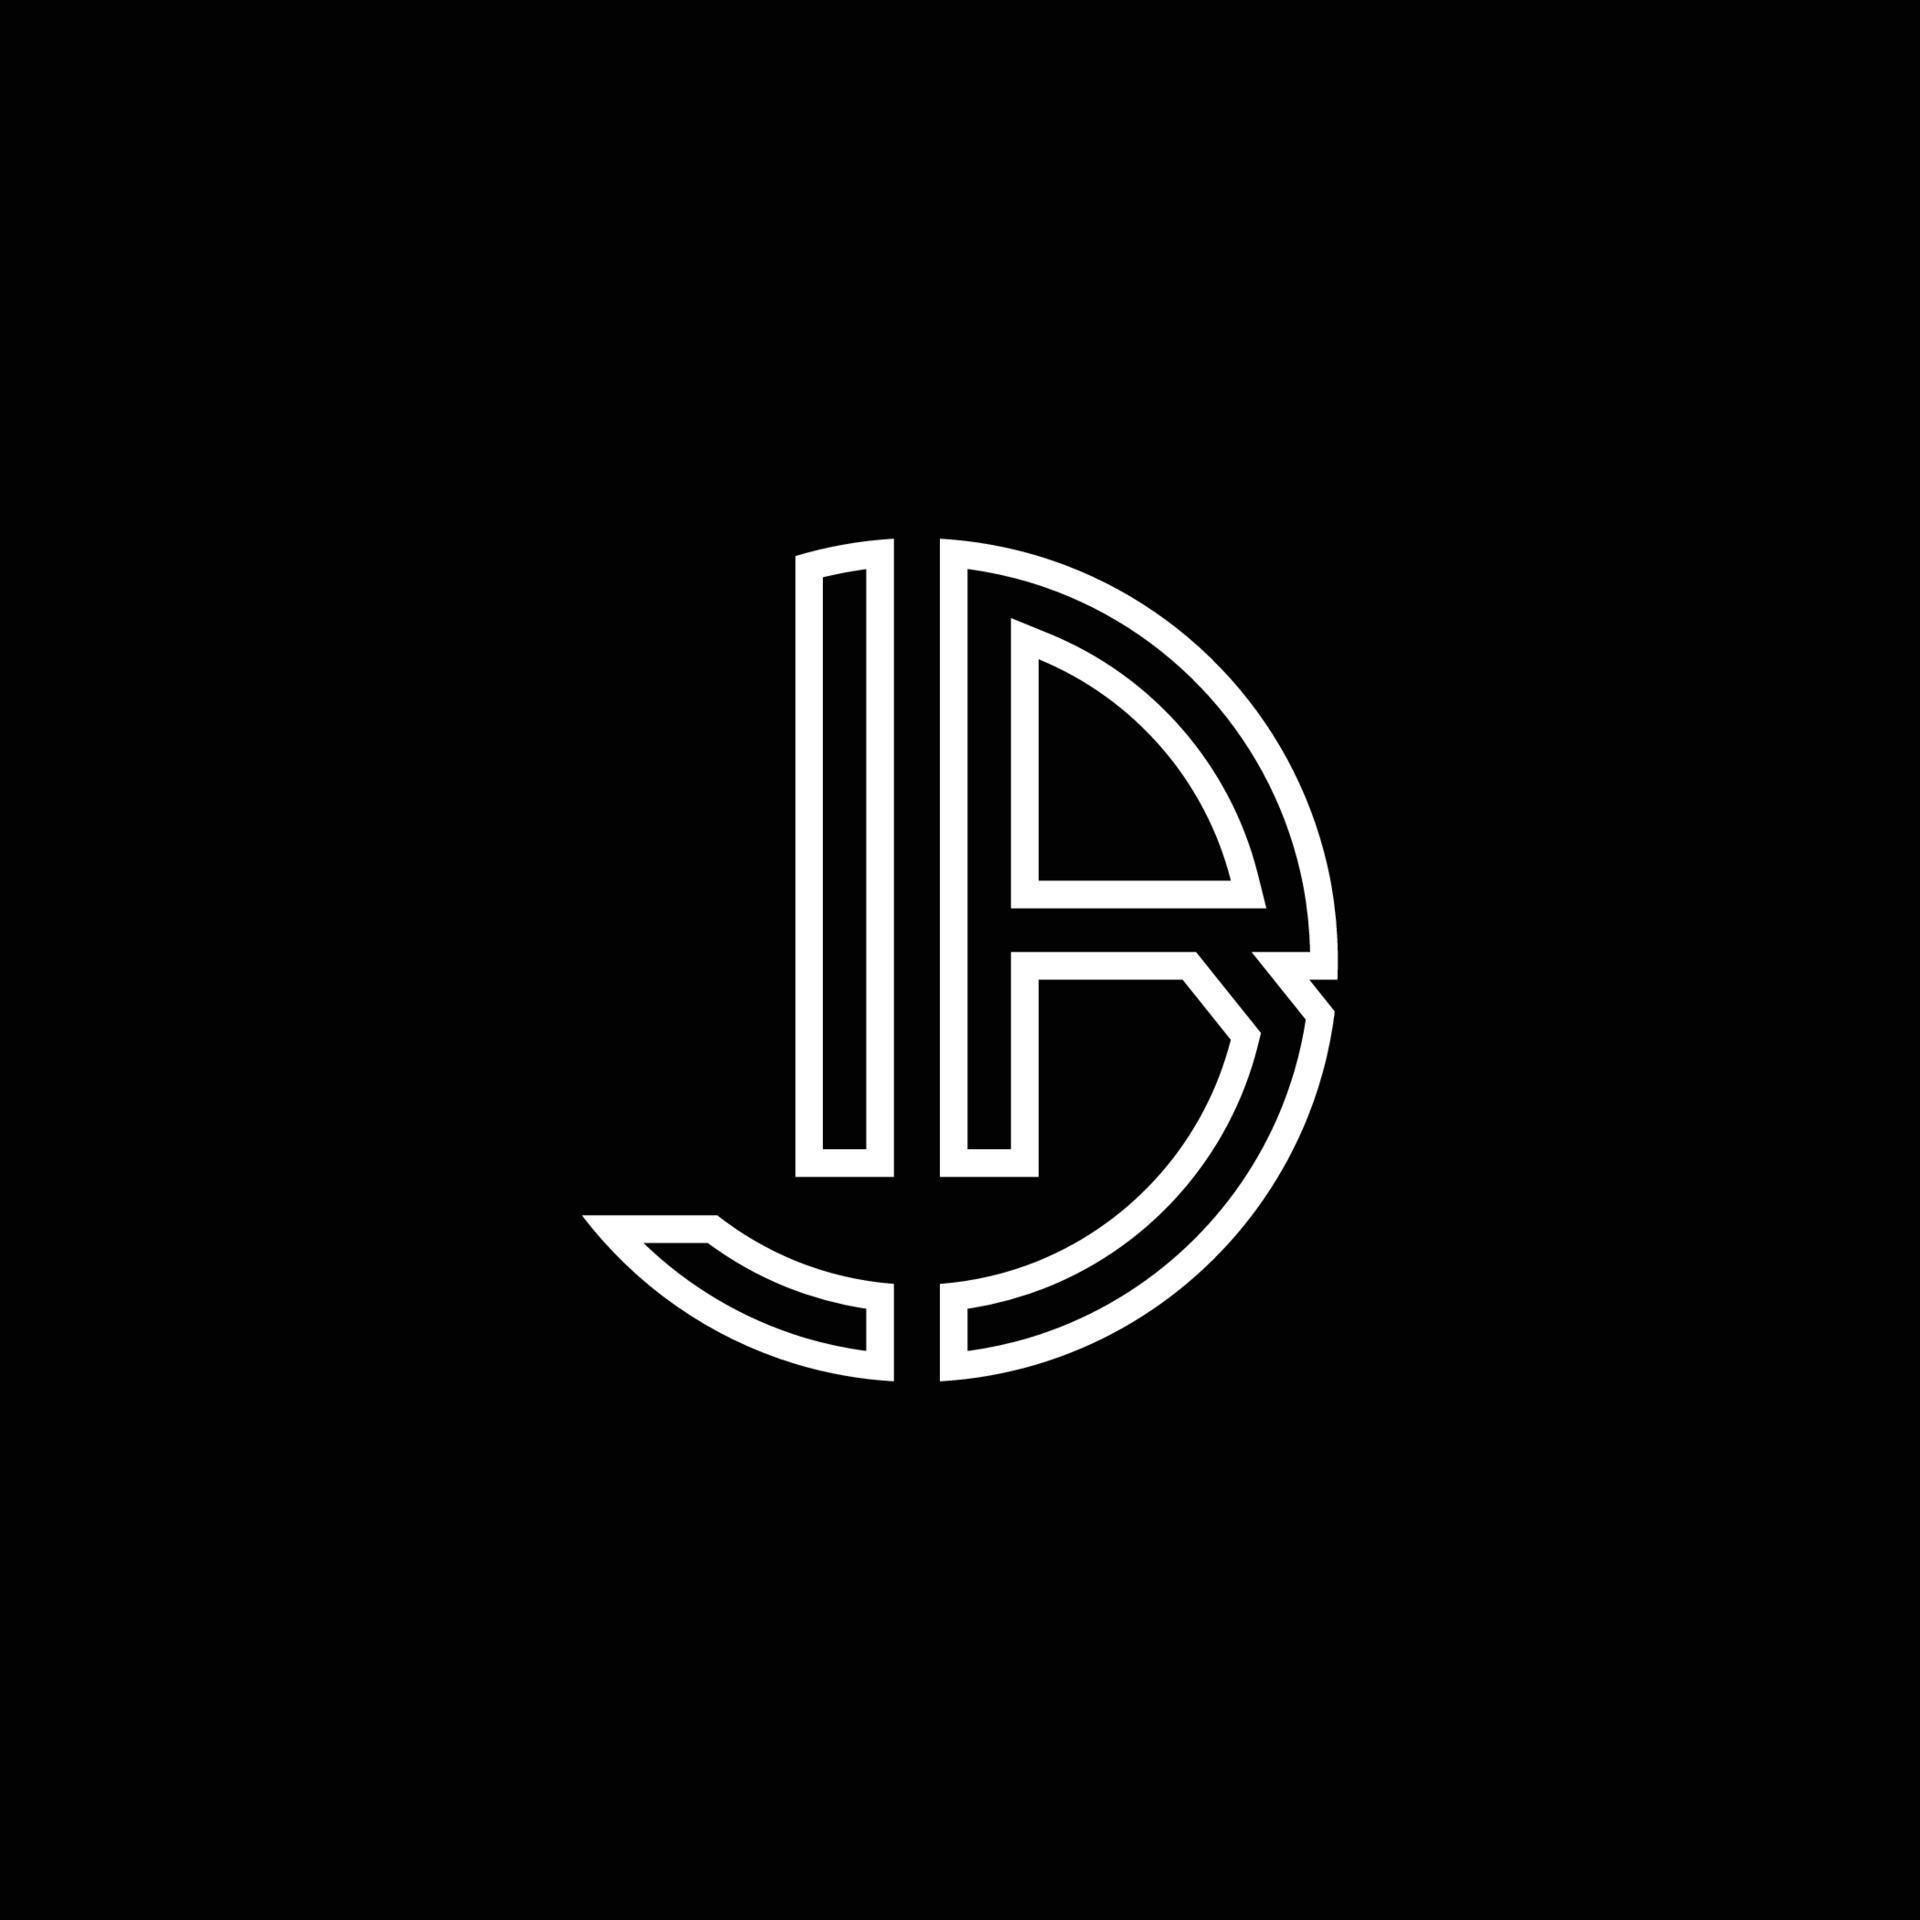 lb monograma logo círculo cinta estilo esquema plantilla de diseño vector